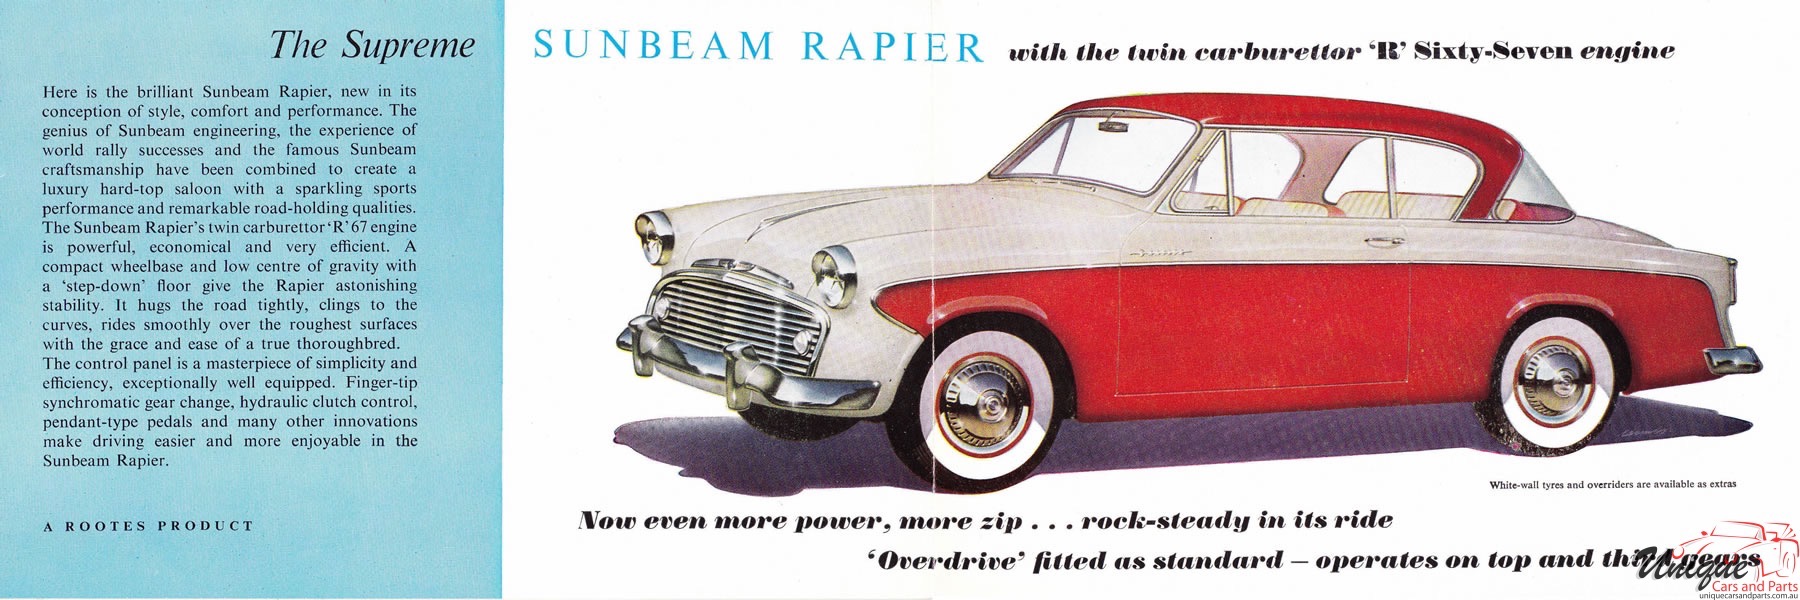 1957 Sunbeam Rapier Brochure Page 8